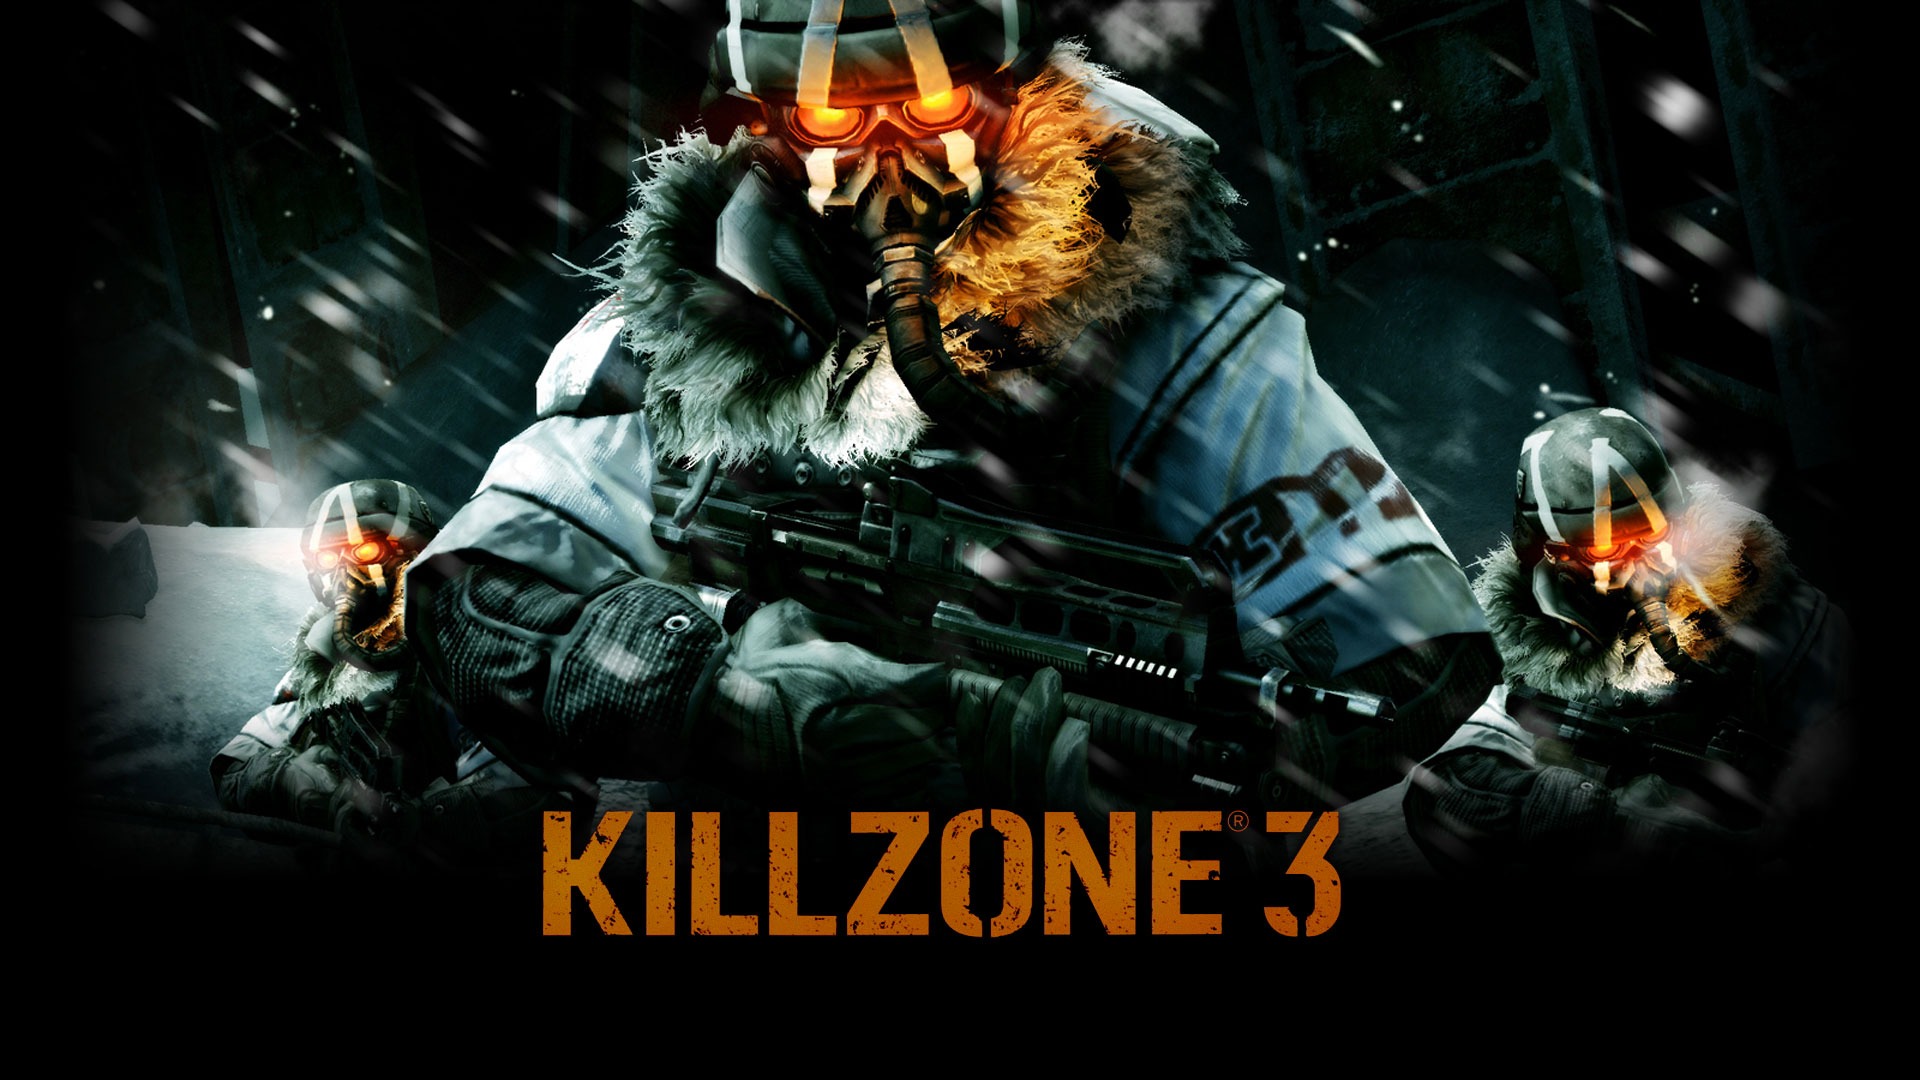 Killzone 3 HD Wallpaper #20 - 1920x1080